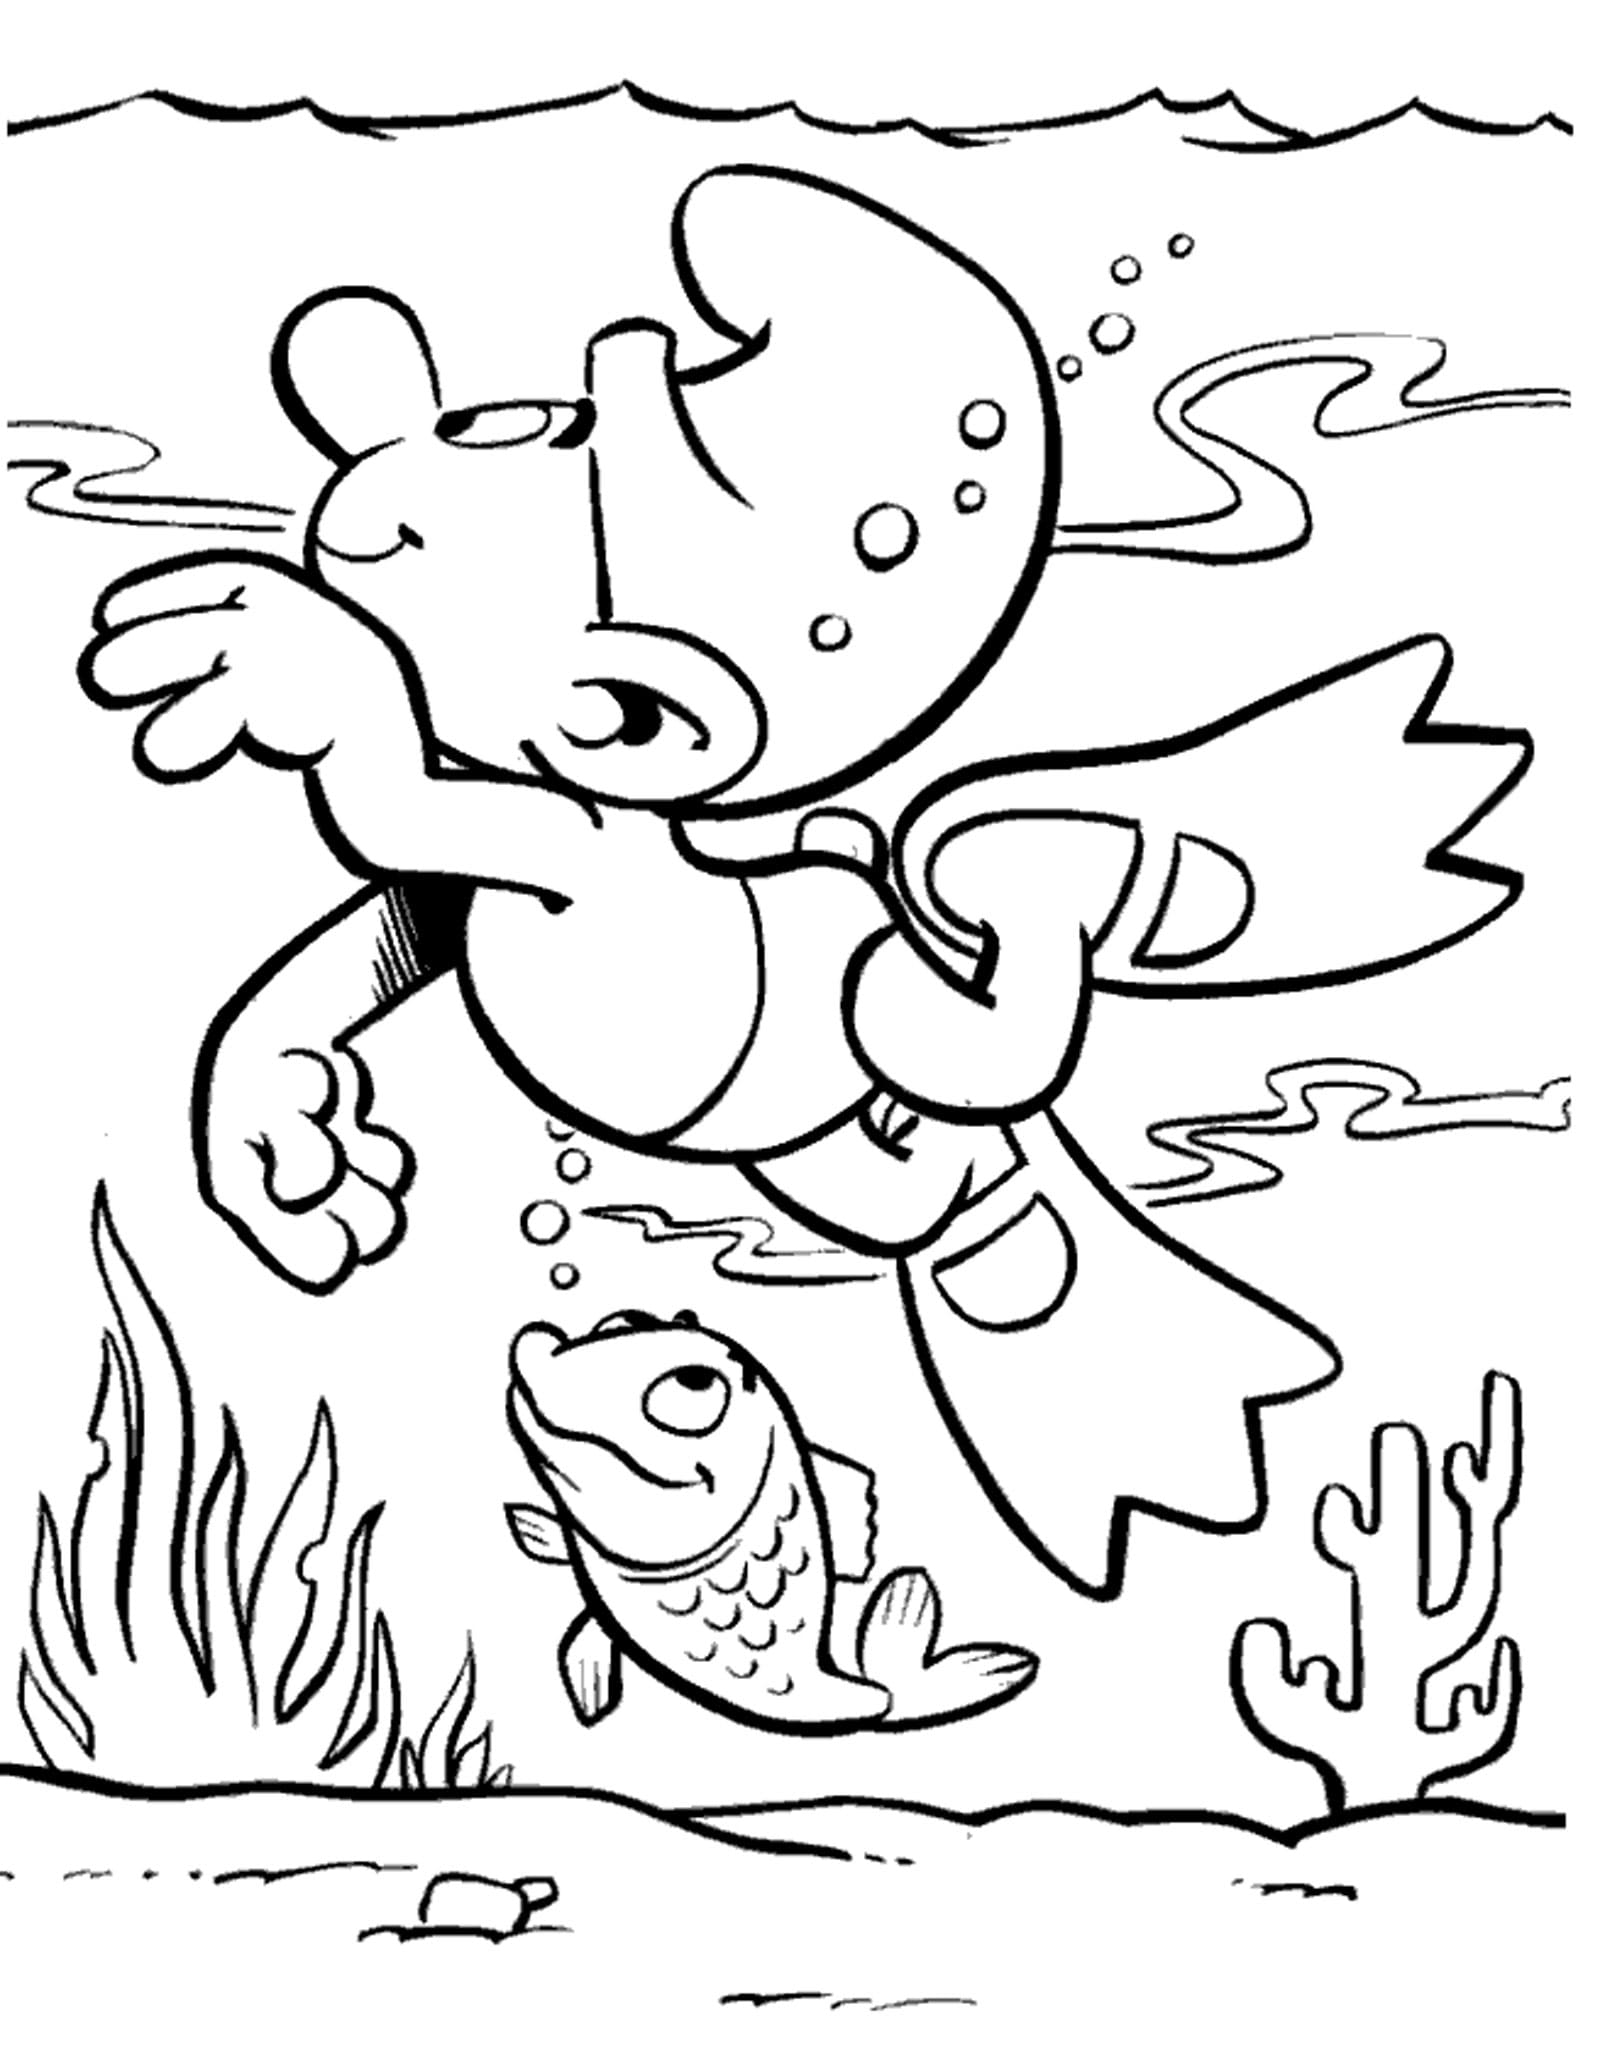 Desenhos dos Smurfs para colorir - 80 imagens para impressão gratuita